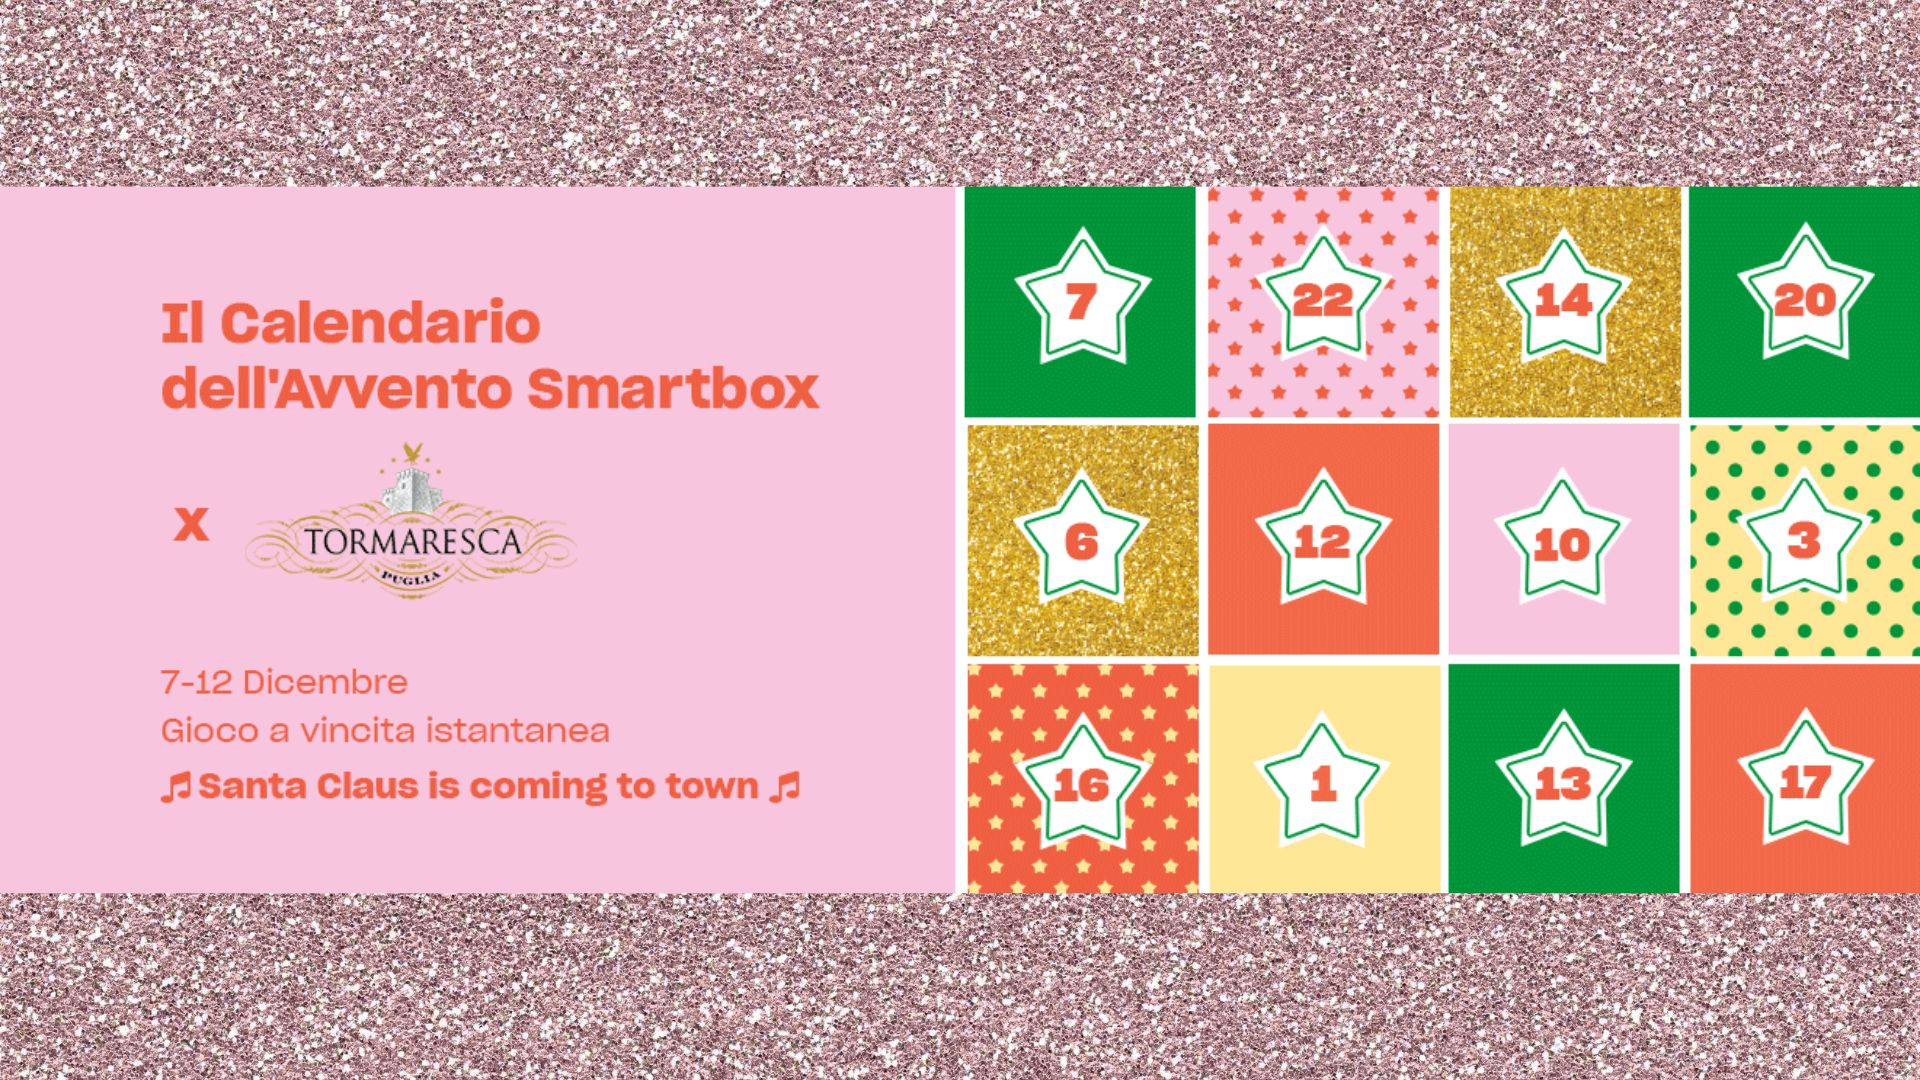 Smartbox concorso calendario dell'avvento